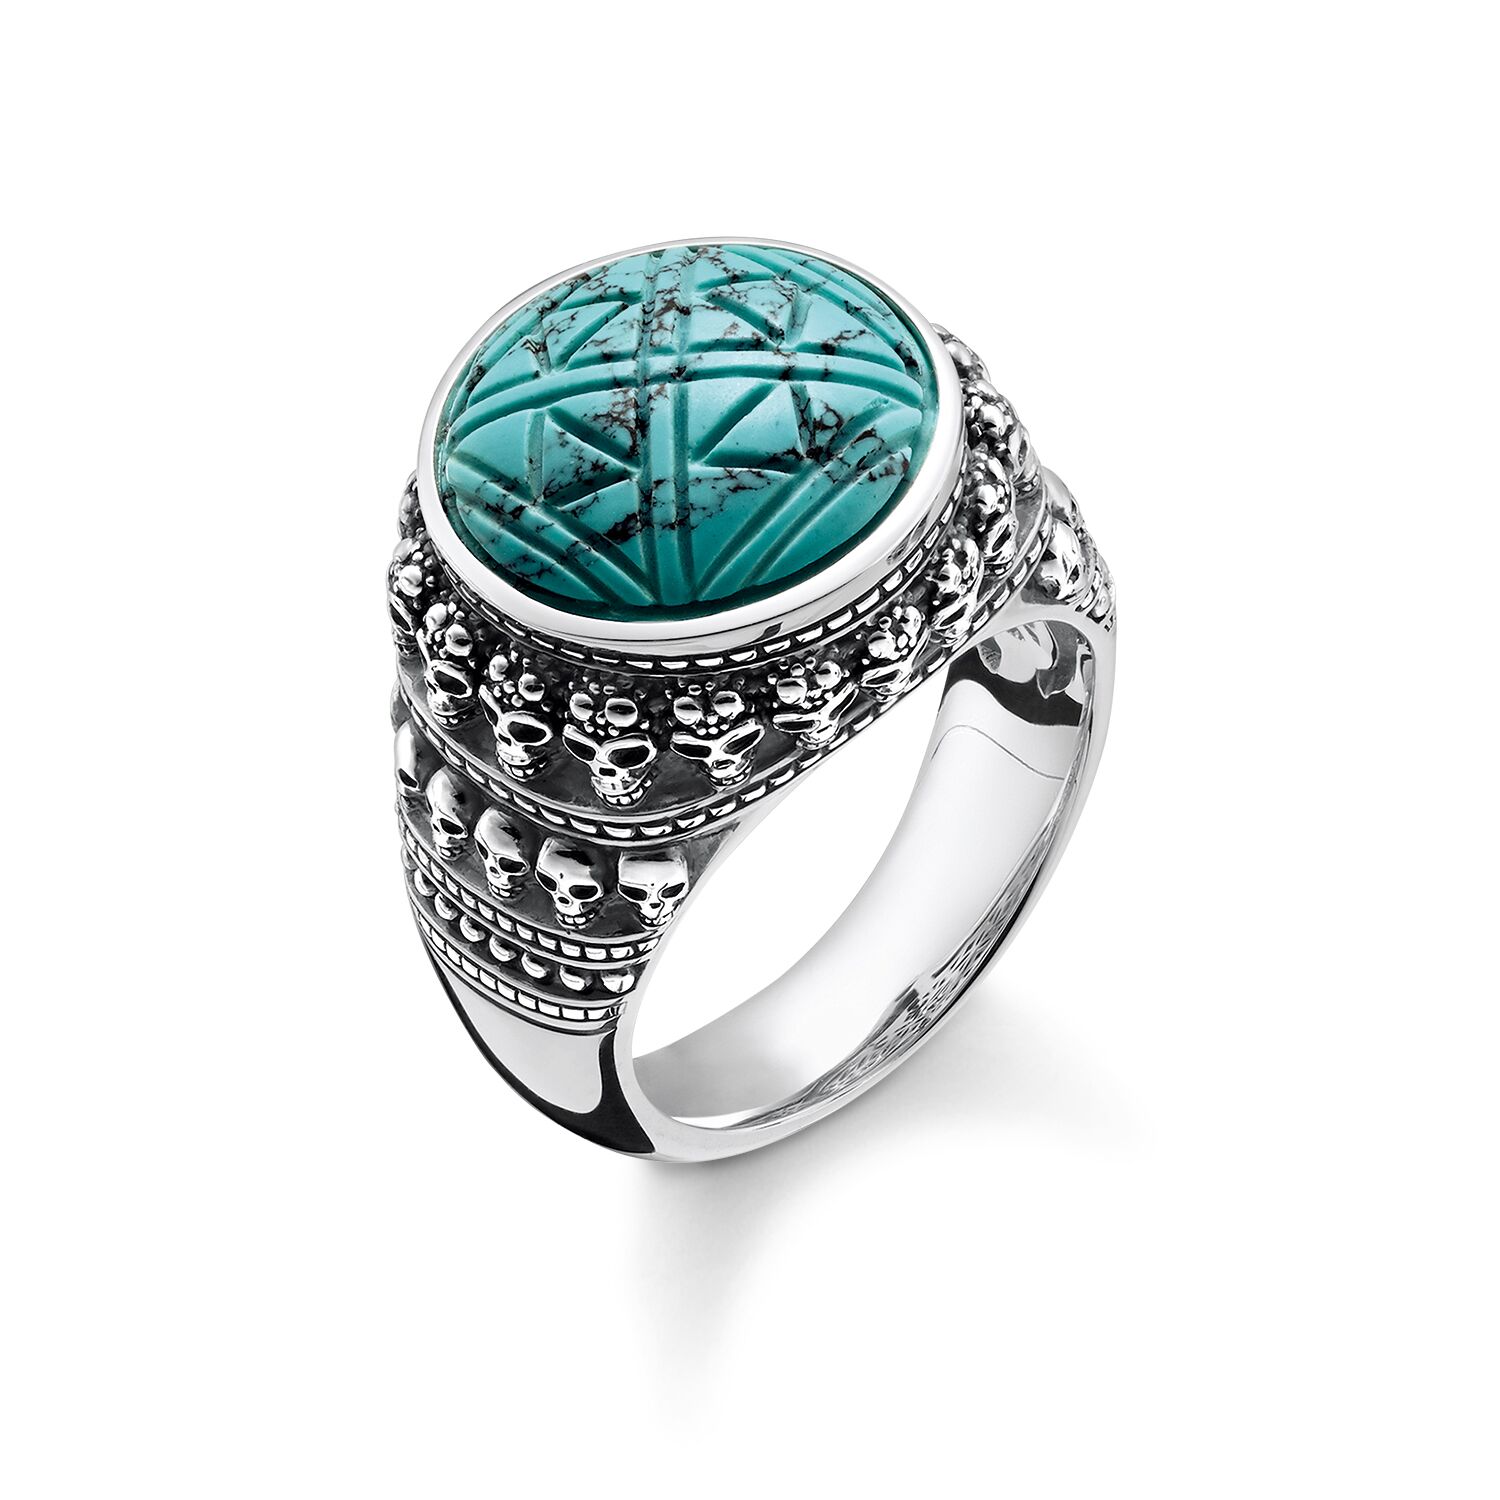 Velkoobchodní zakázkové stříbrné šperky Graphic OEM/ODM Jewelry pečetní prsten s lebkami